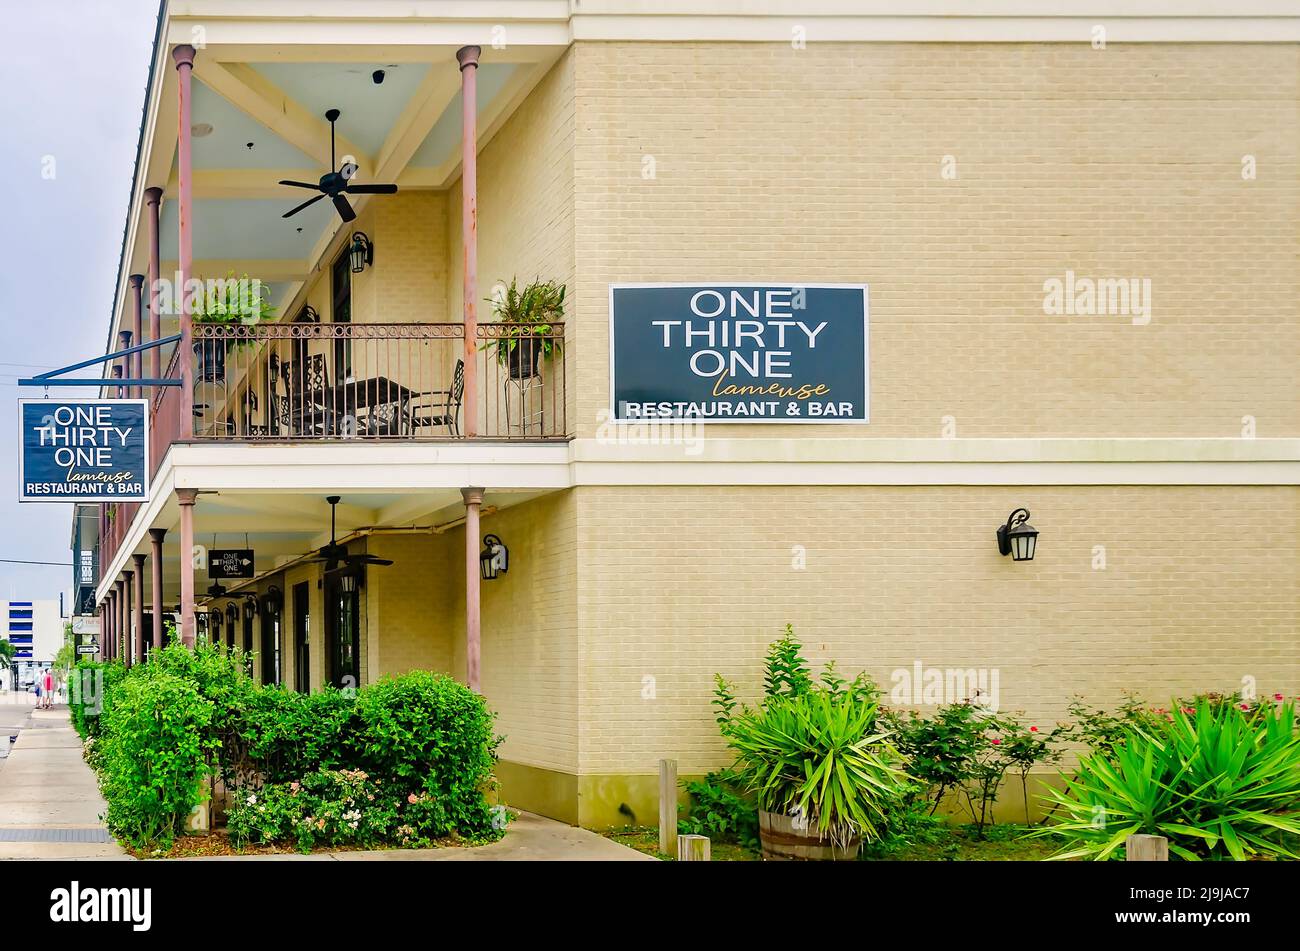 Une maison de trente et un Lameuse et Fuji Sushi sont photographiés, le 22 mai 2022, à Biloxi, Mississippi. Les restaurants sont situés sur la rue Lameuse. Banque D'Images